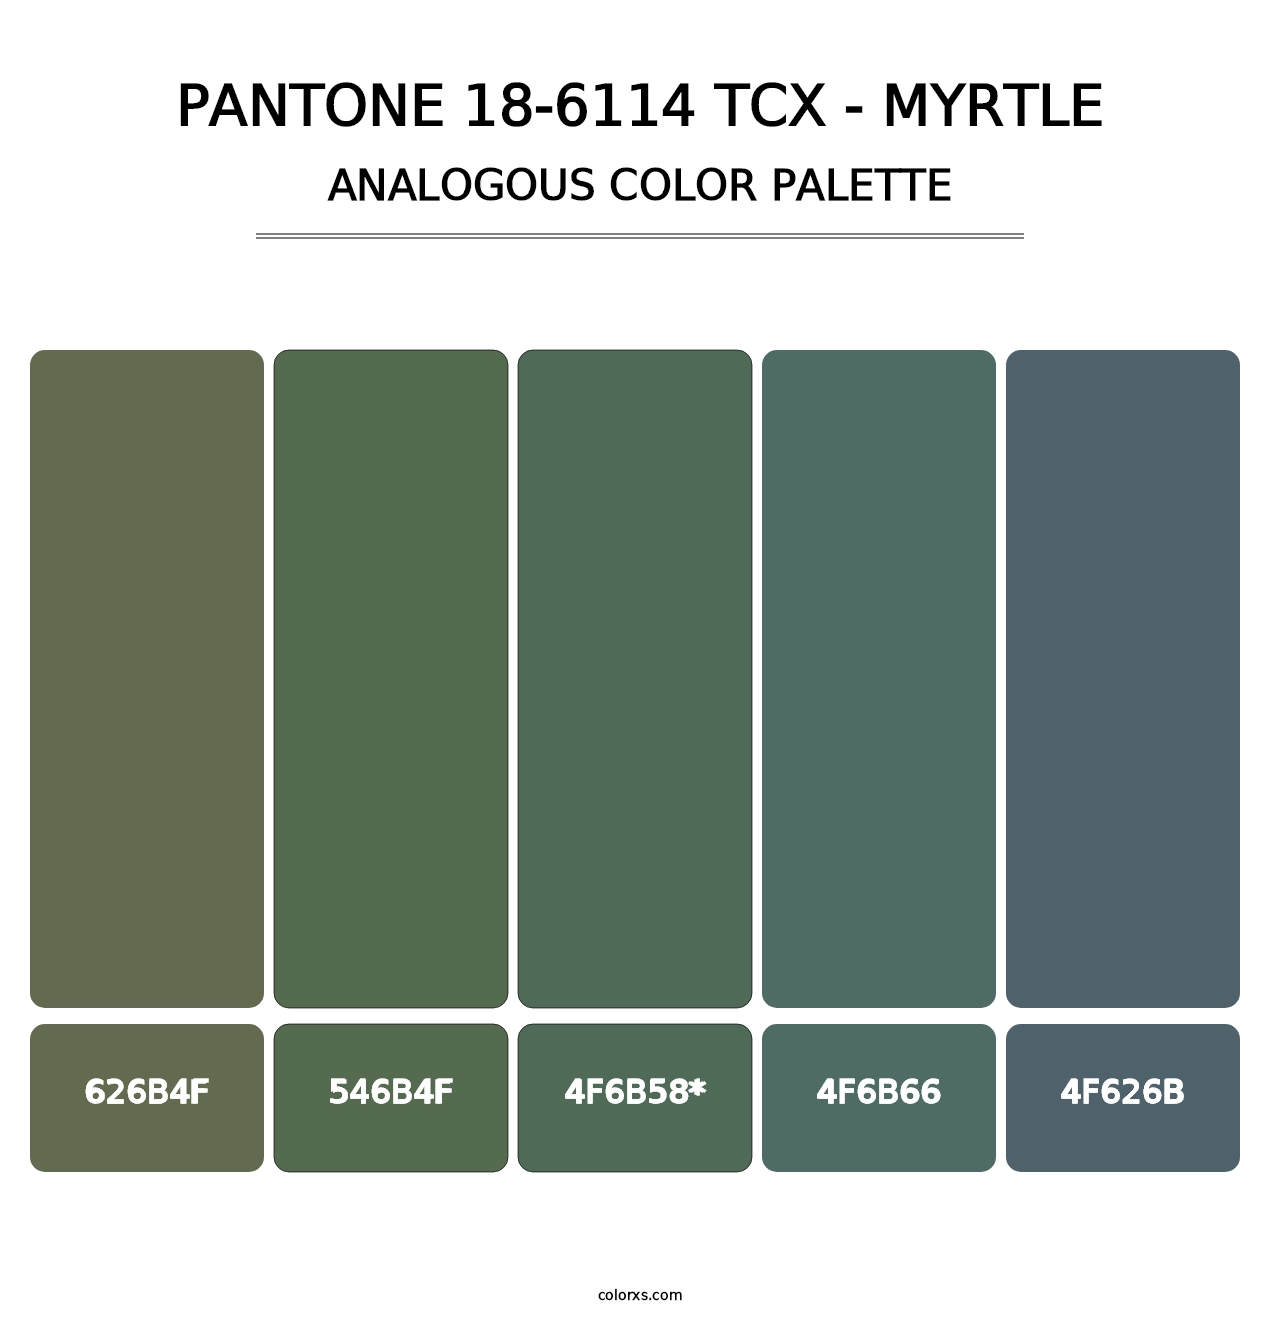 PANTONE 18-6114 TCX - Myrtle - Analogous Color Palette